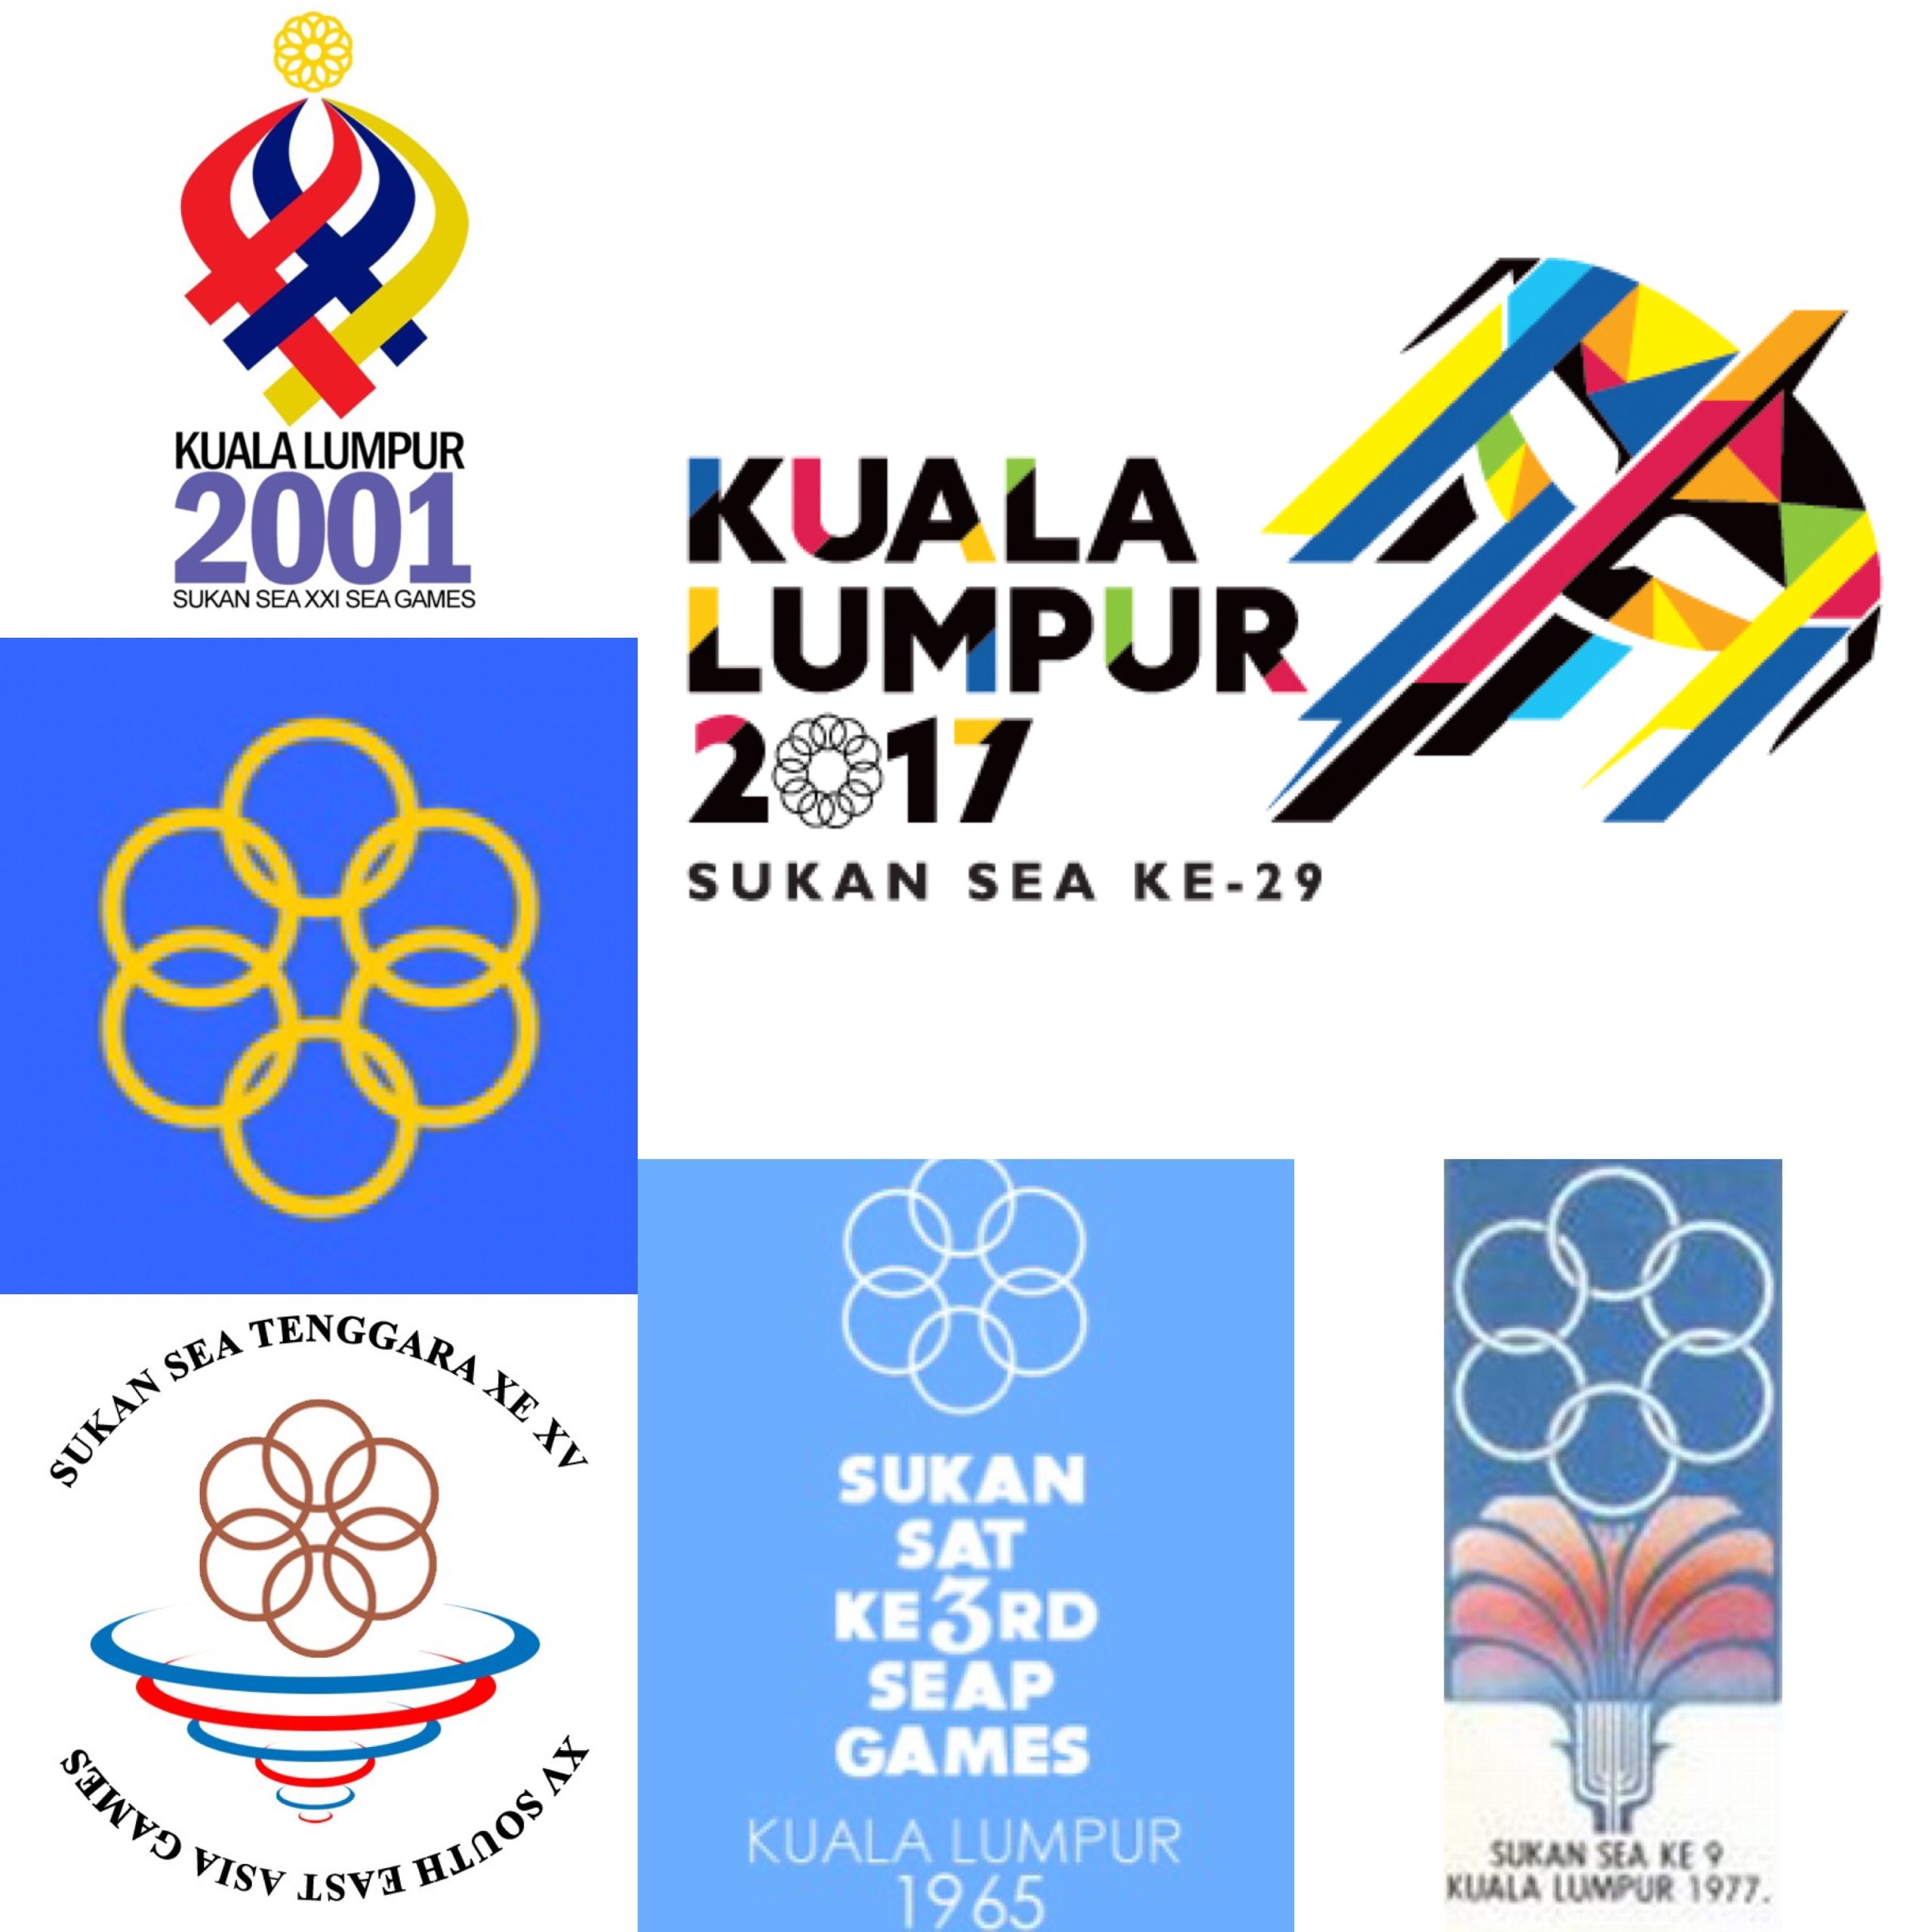 7 Fakta Menarik Anda Mungkin Tak Tahu Tentang Sukan SEA Kuala Lumpur 2017, Goodluck Team Malaysia!